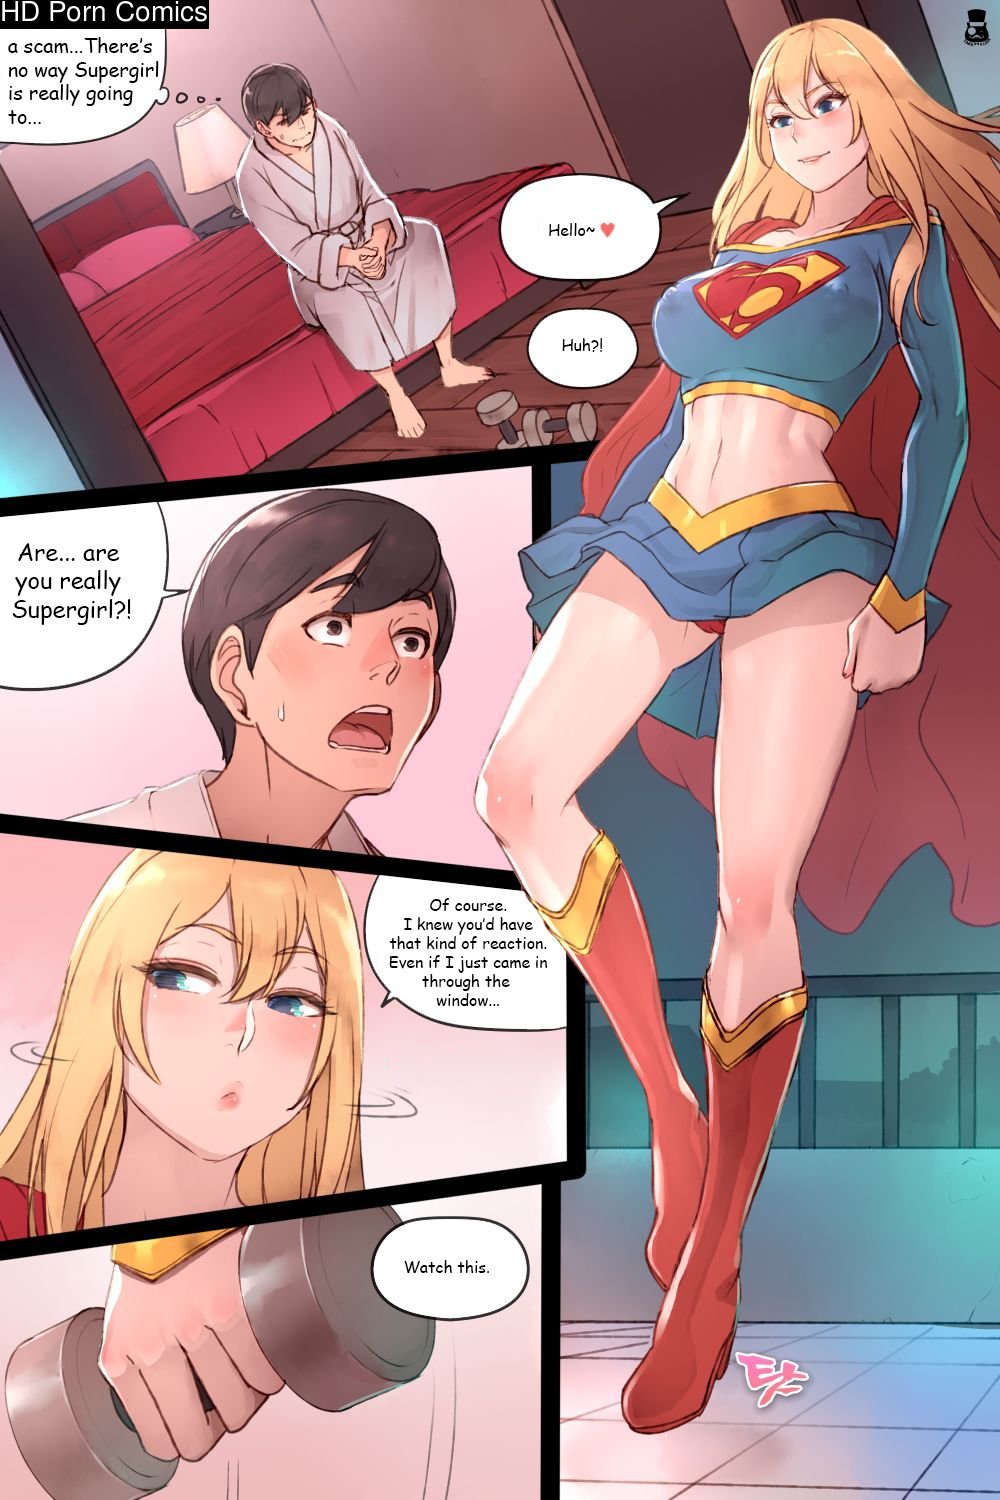 Supergirl's Secret Service comic porn | HD Porn Comics